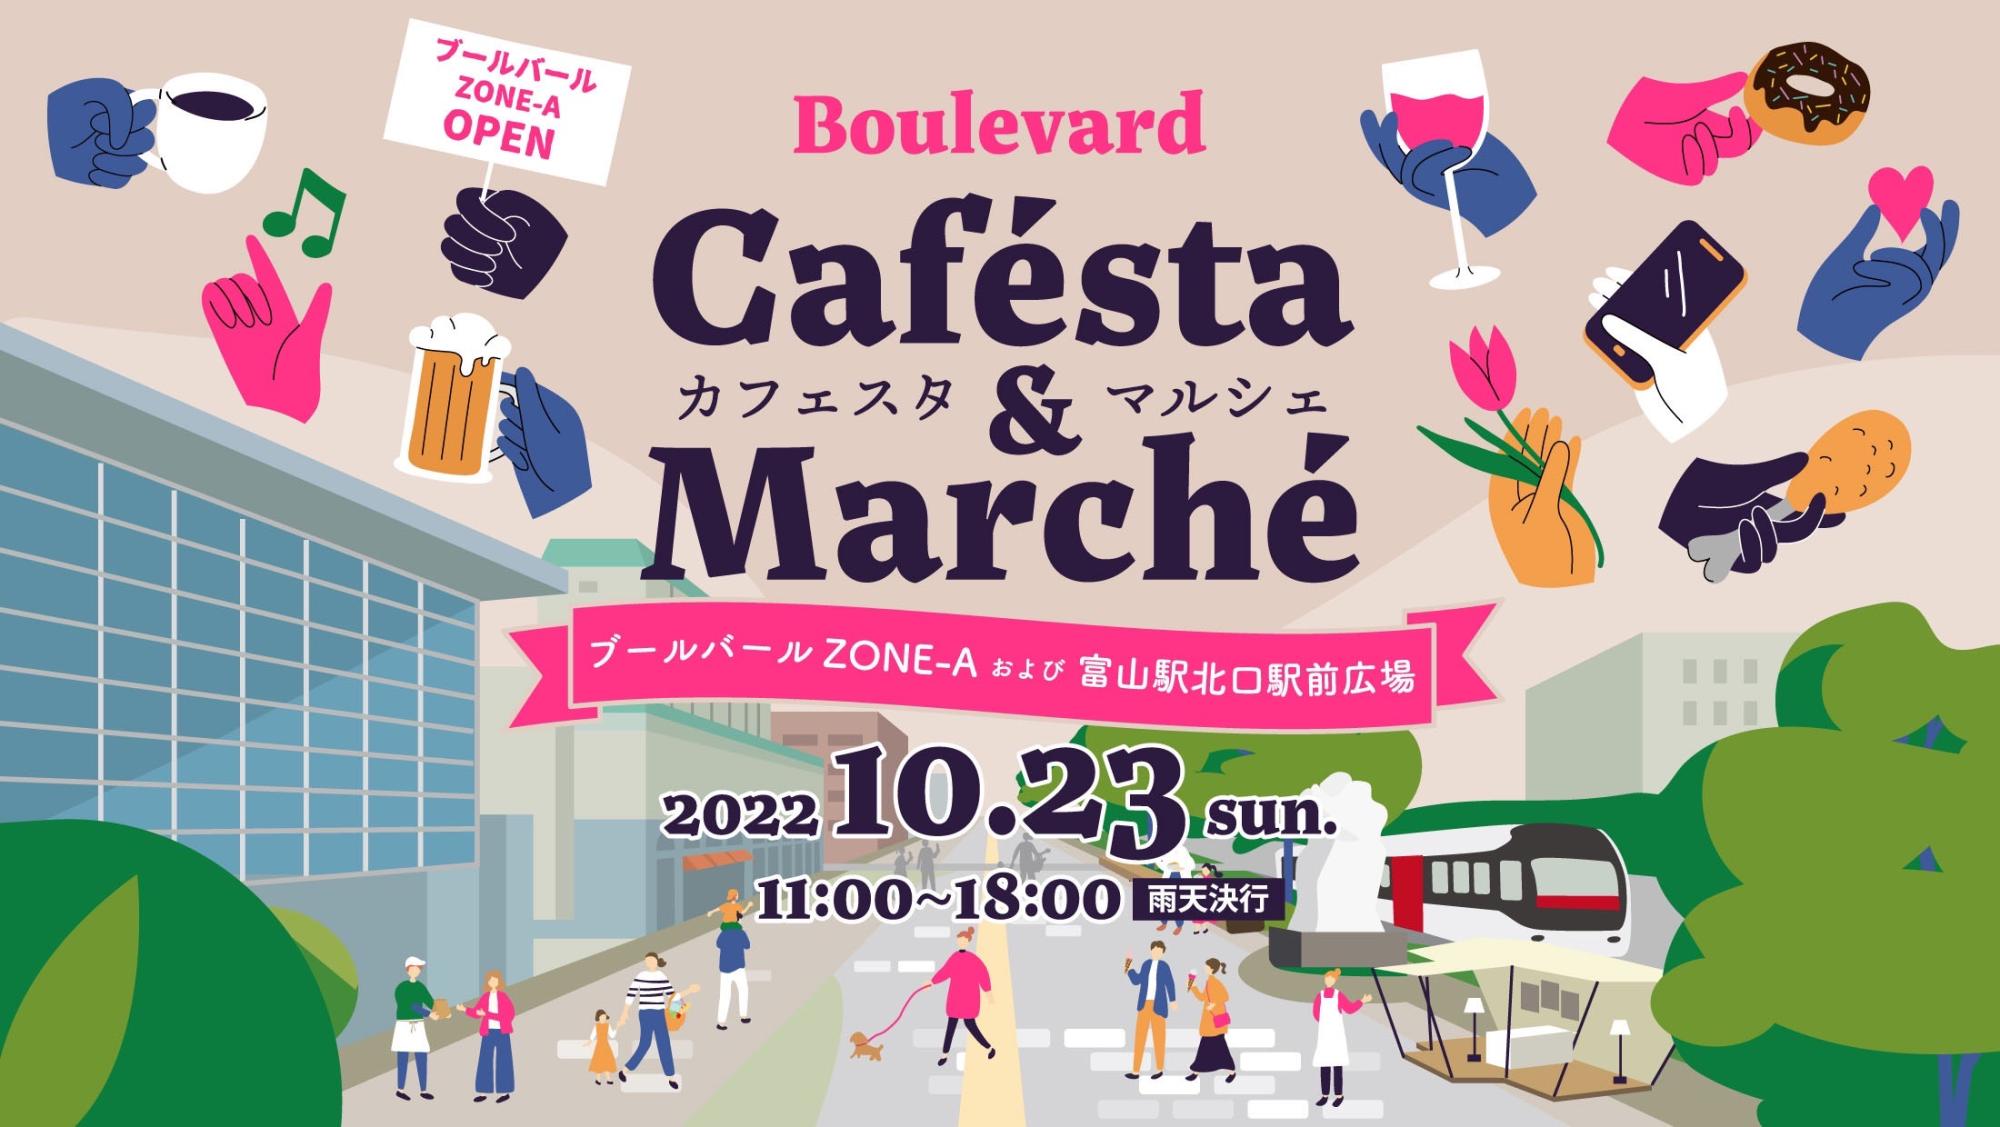 Boulevard Cafésta & Marché 開催！